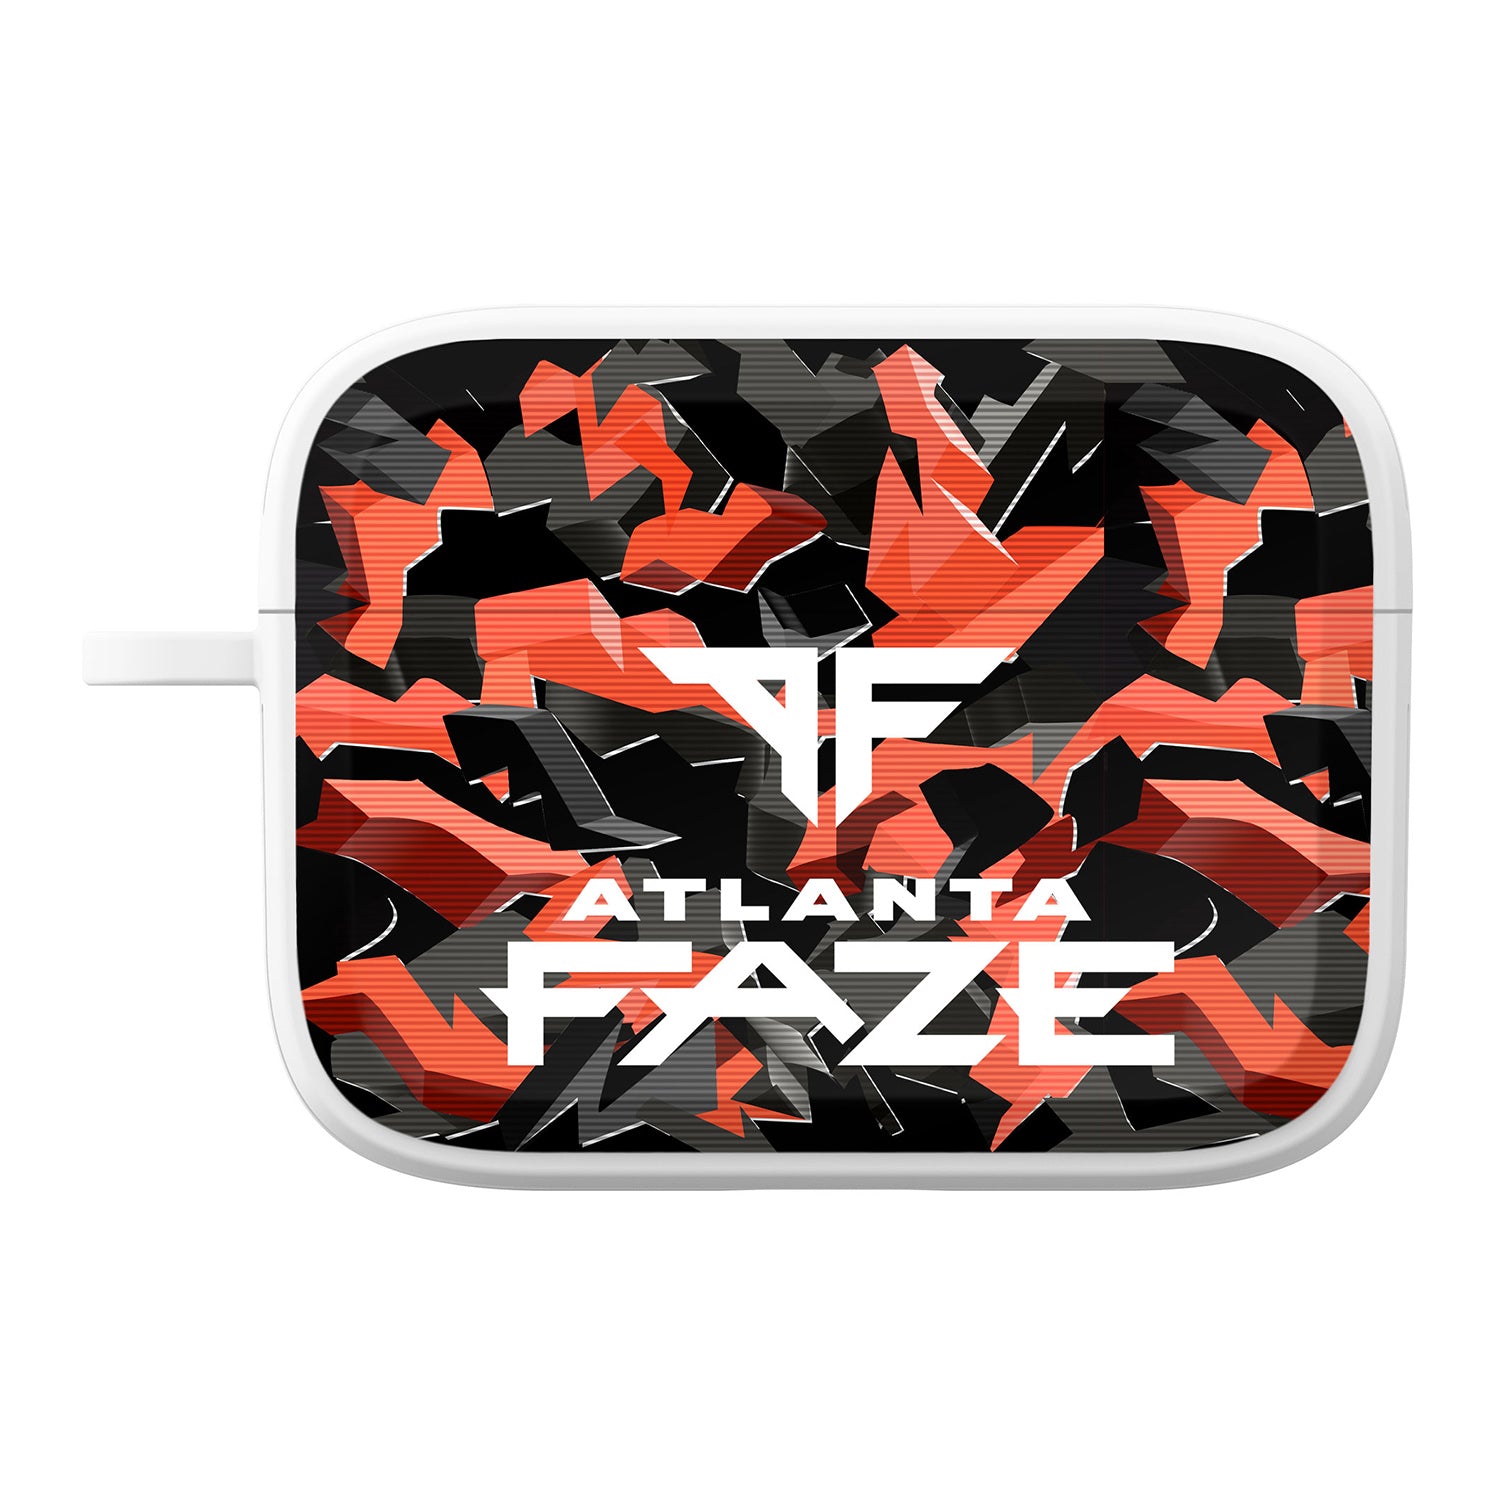 Atlanta Faze Camo Apple Airpods Pro Case - Front View